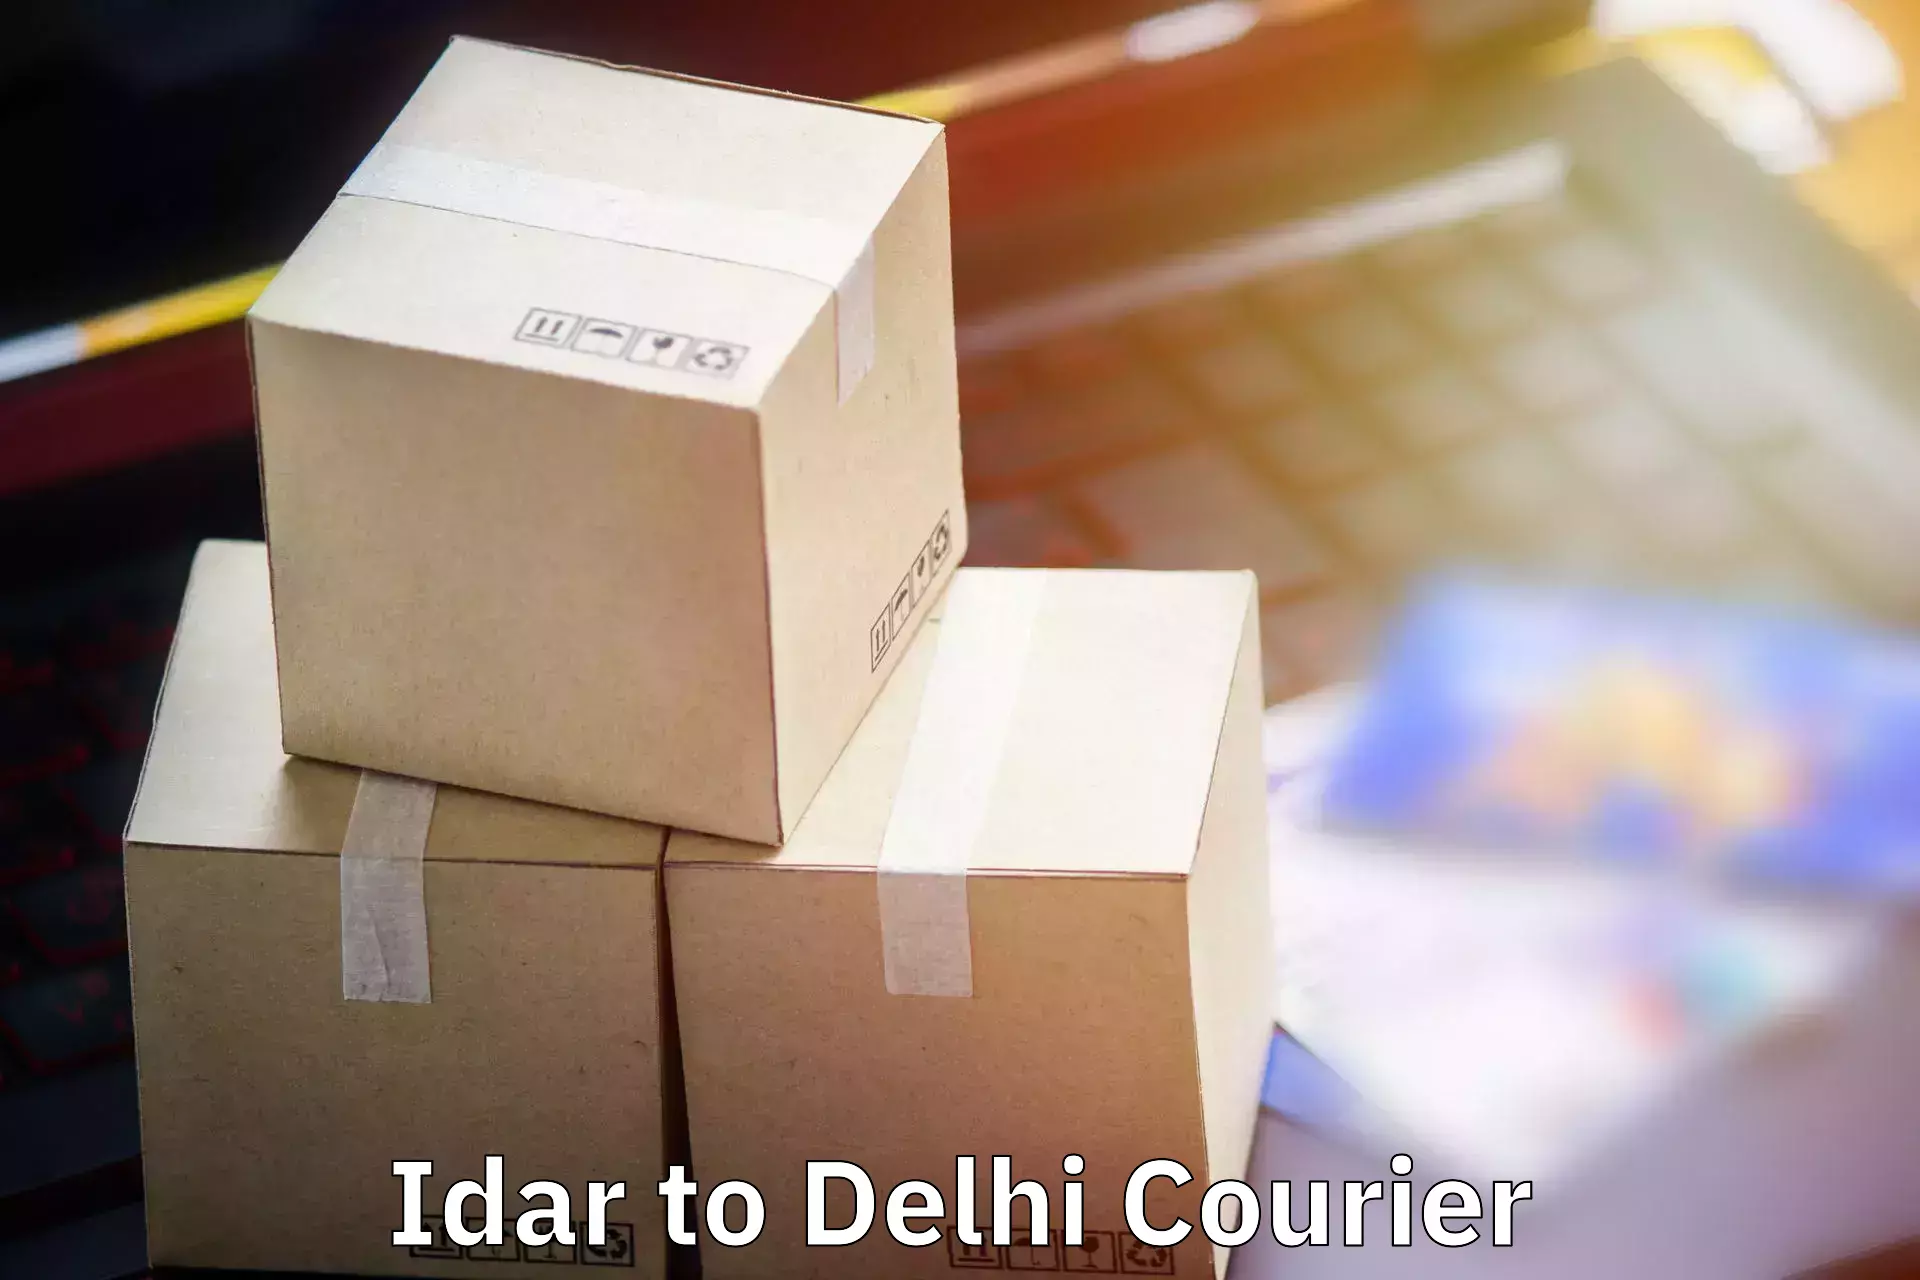 Baggage courier guide Idar to IIT Delhi